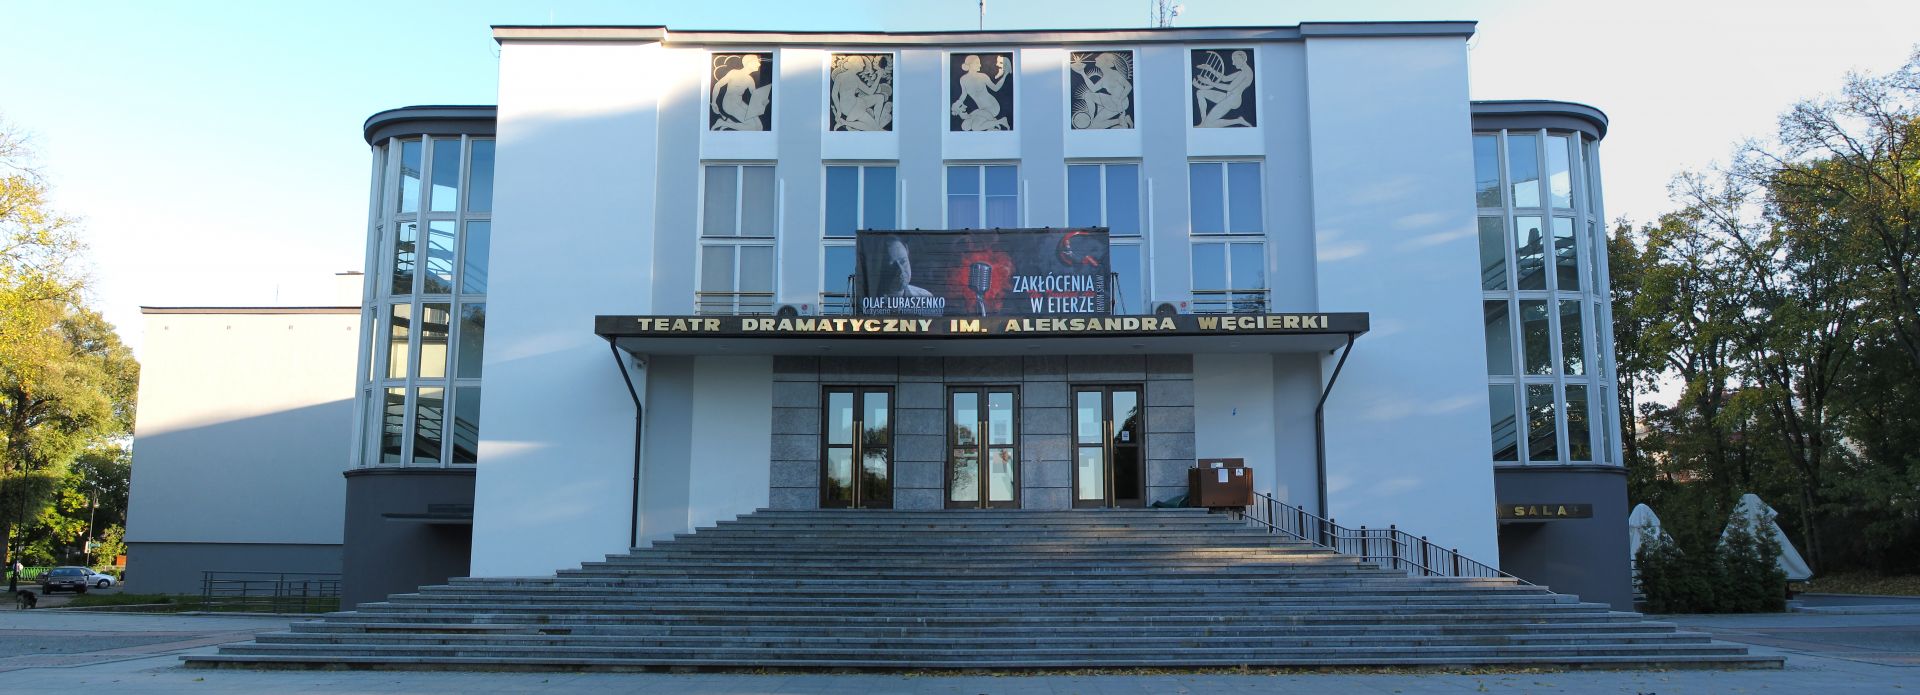 Dramatic Theater Aleksandra Węgierki